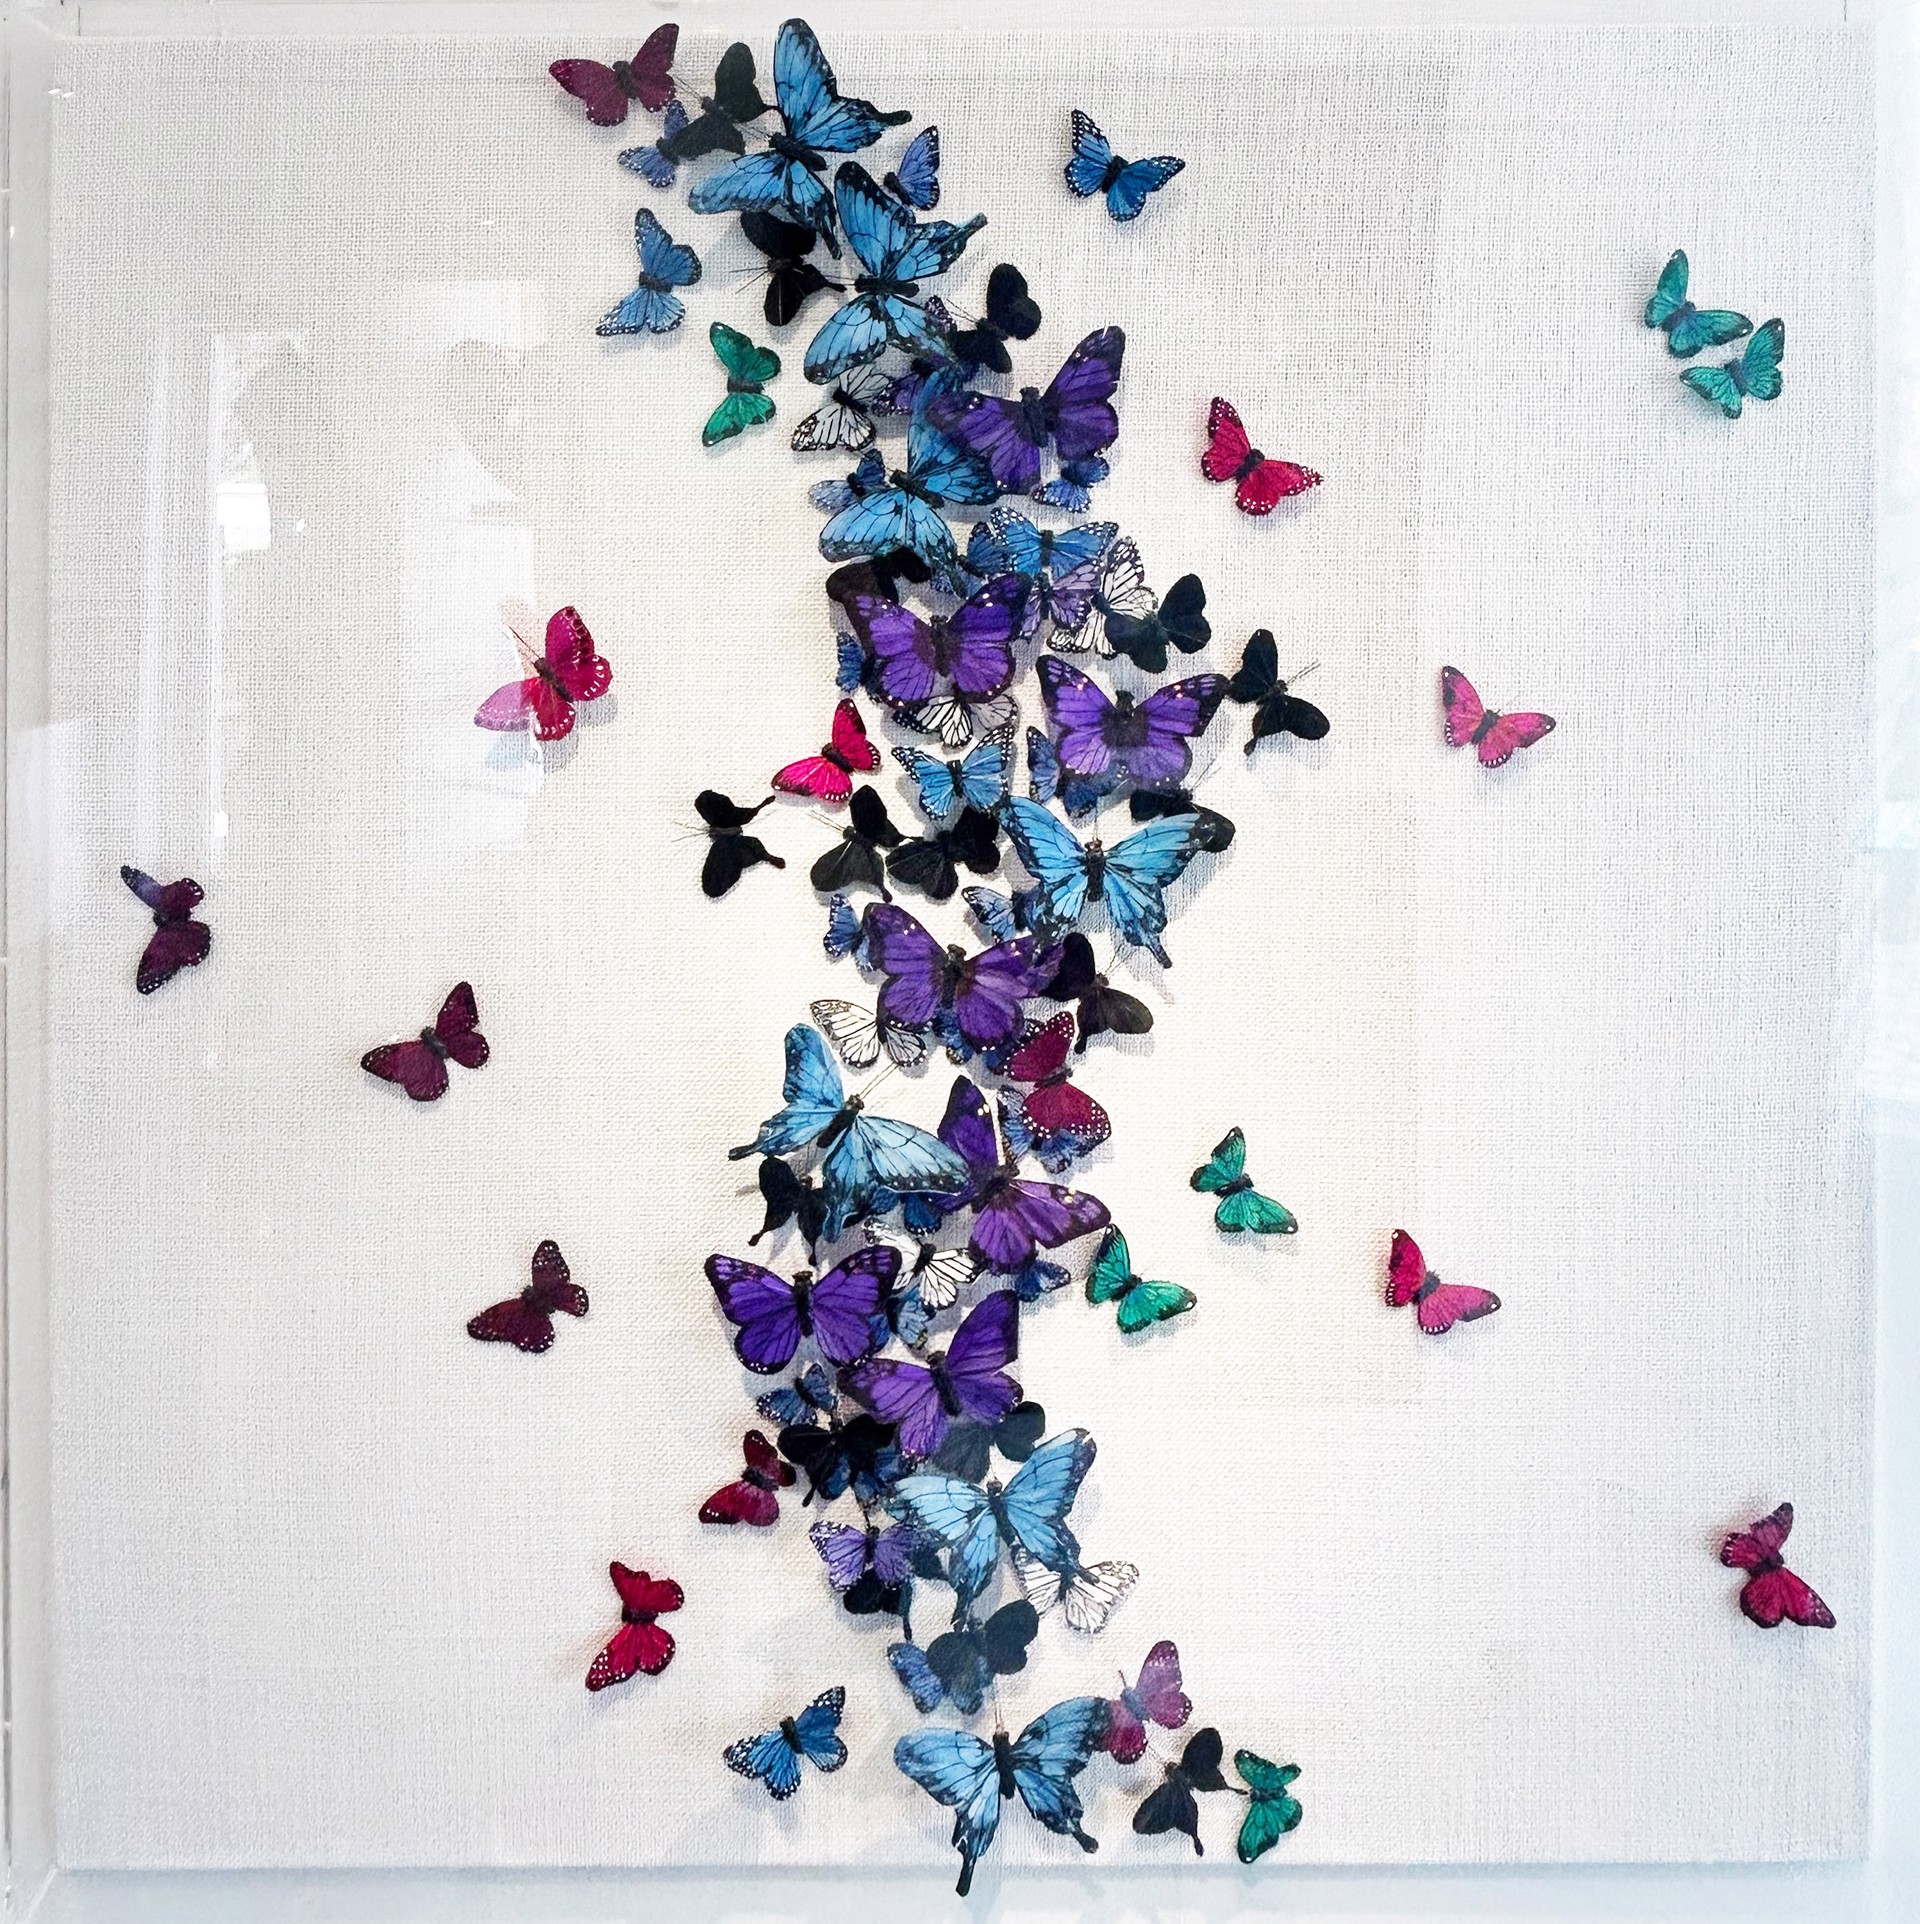 Midnight Flutter by Vangelis